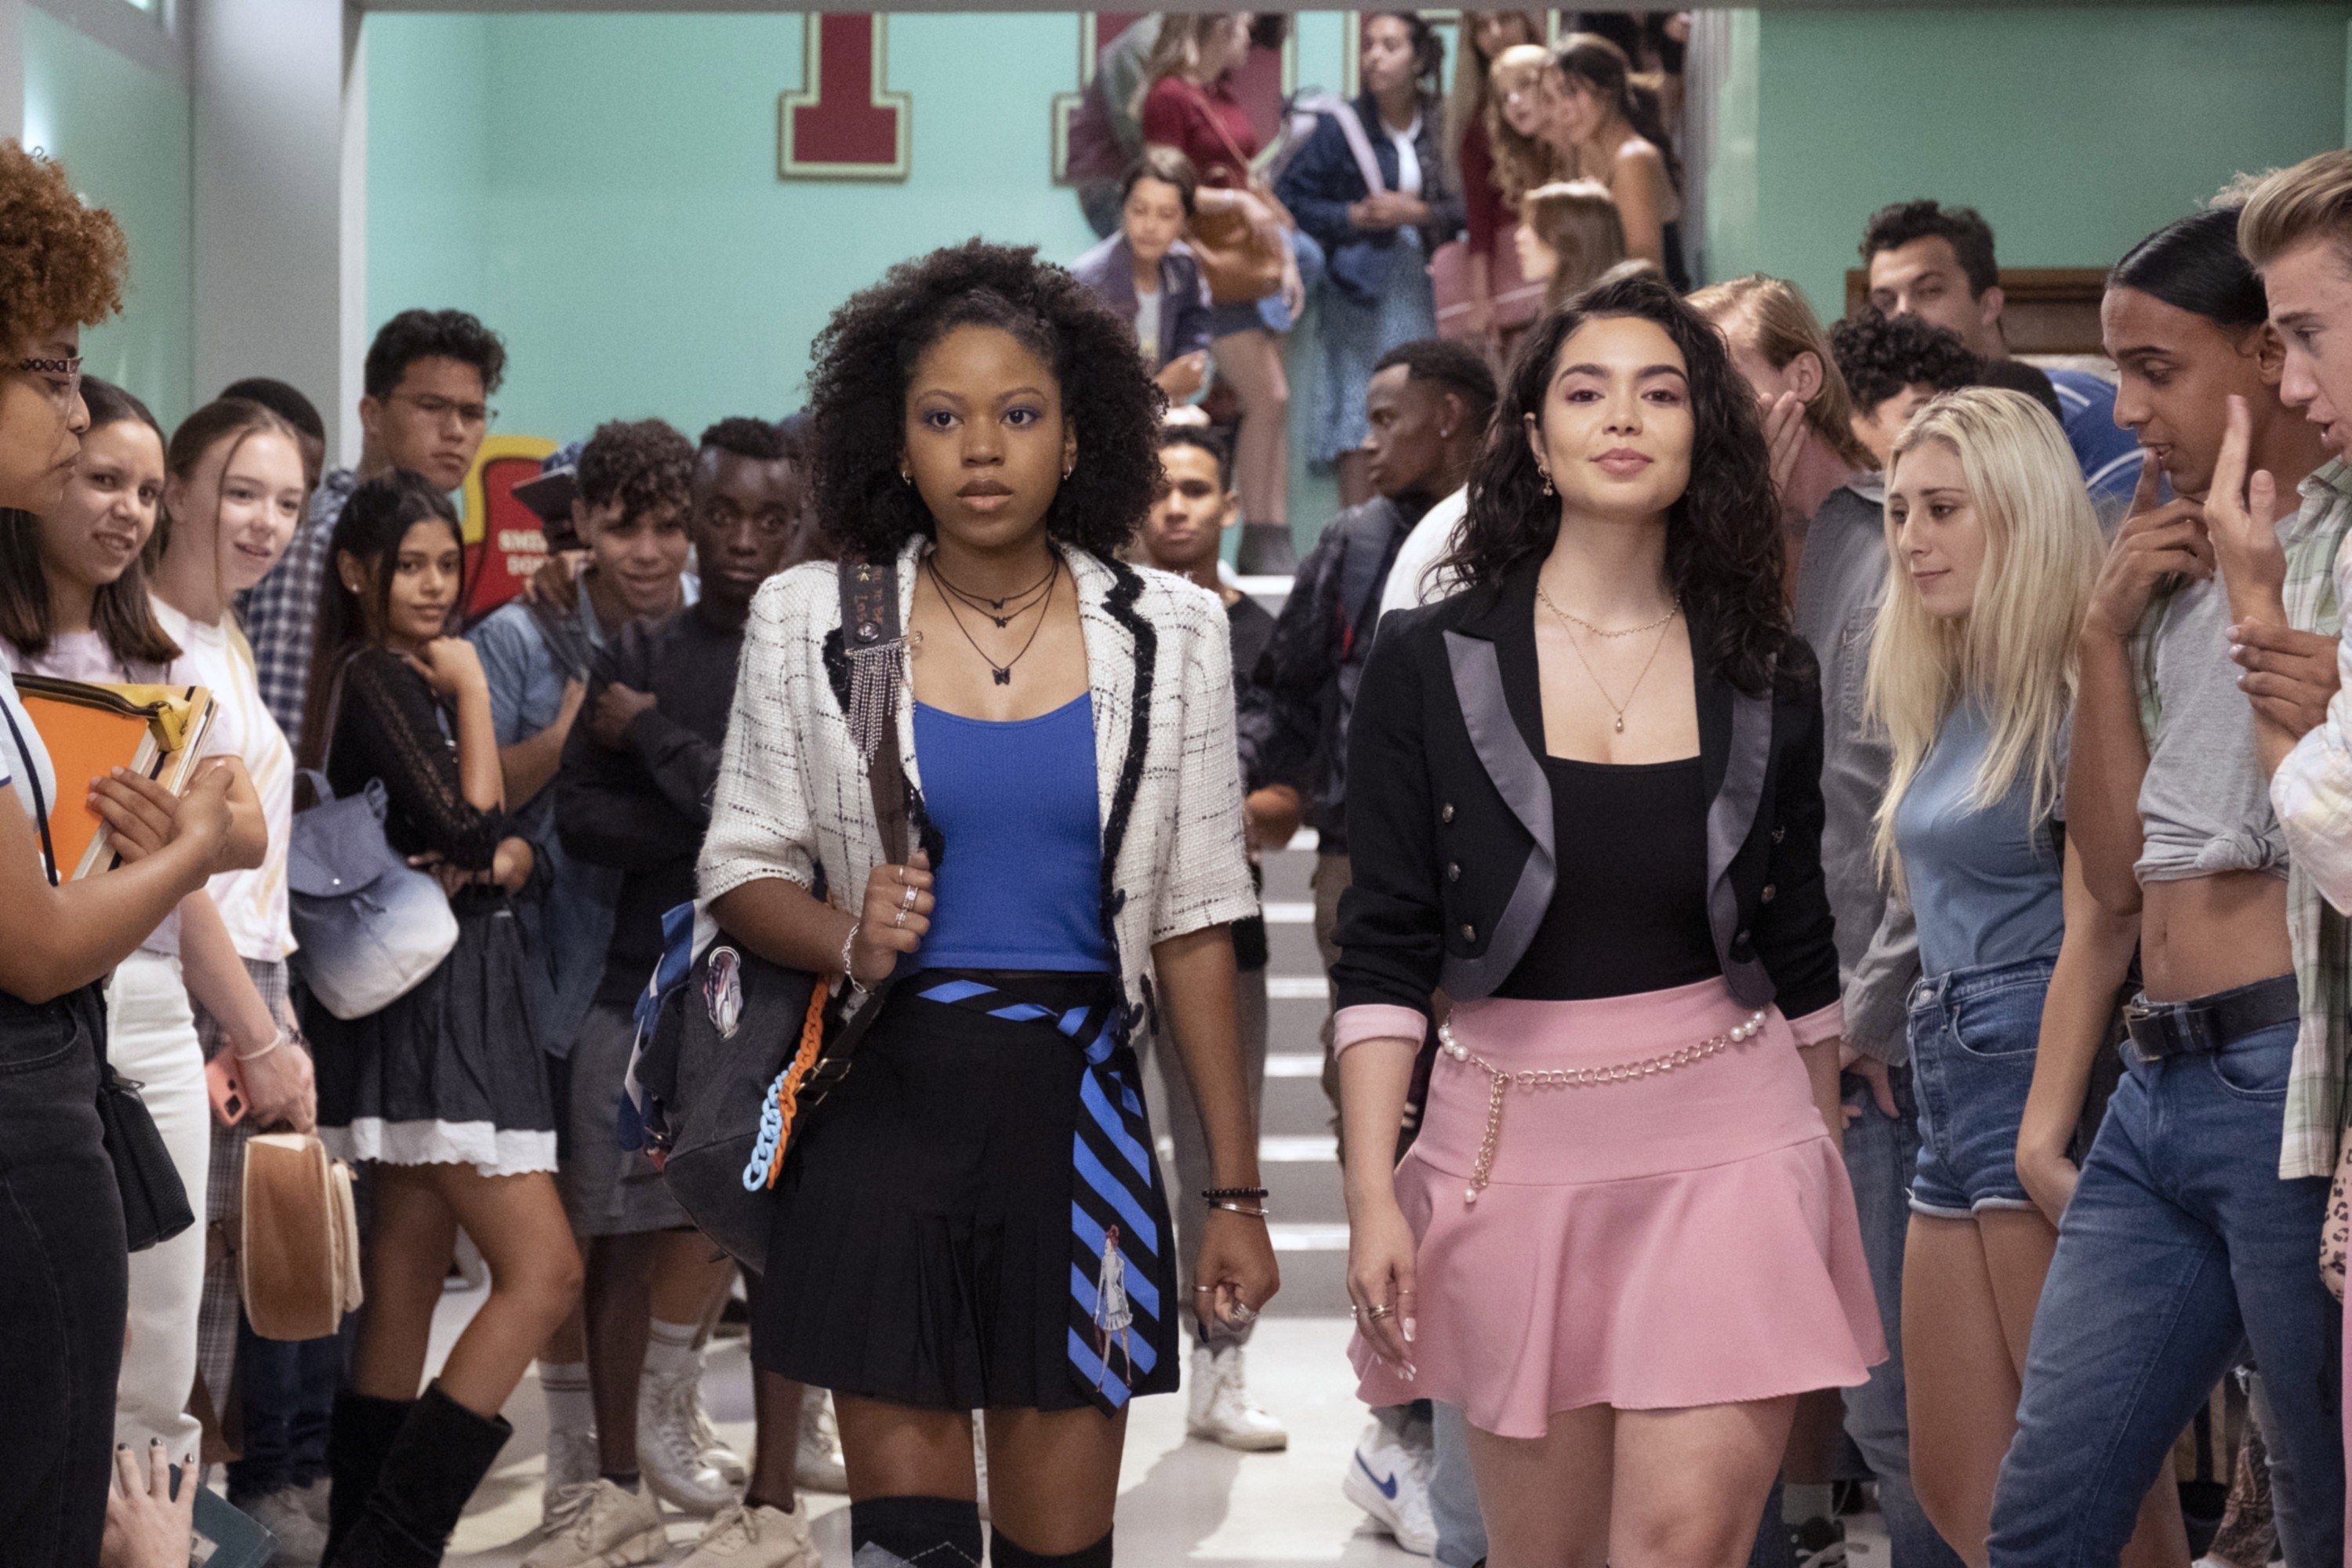 Two girls walk down their high school hallway